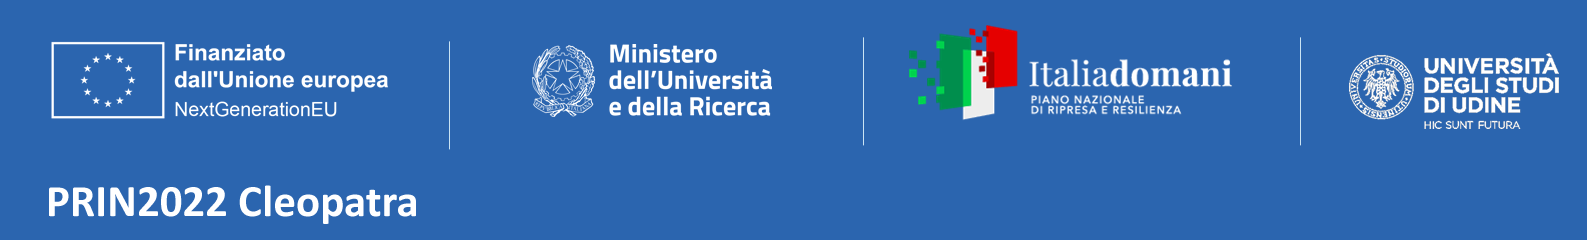 Logo PRIN2022Cleopatra - Univerità degli Studi di Udine